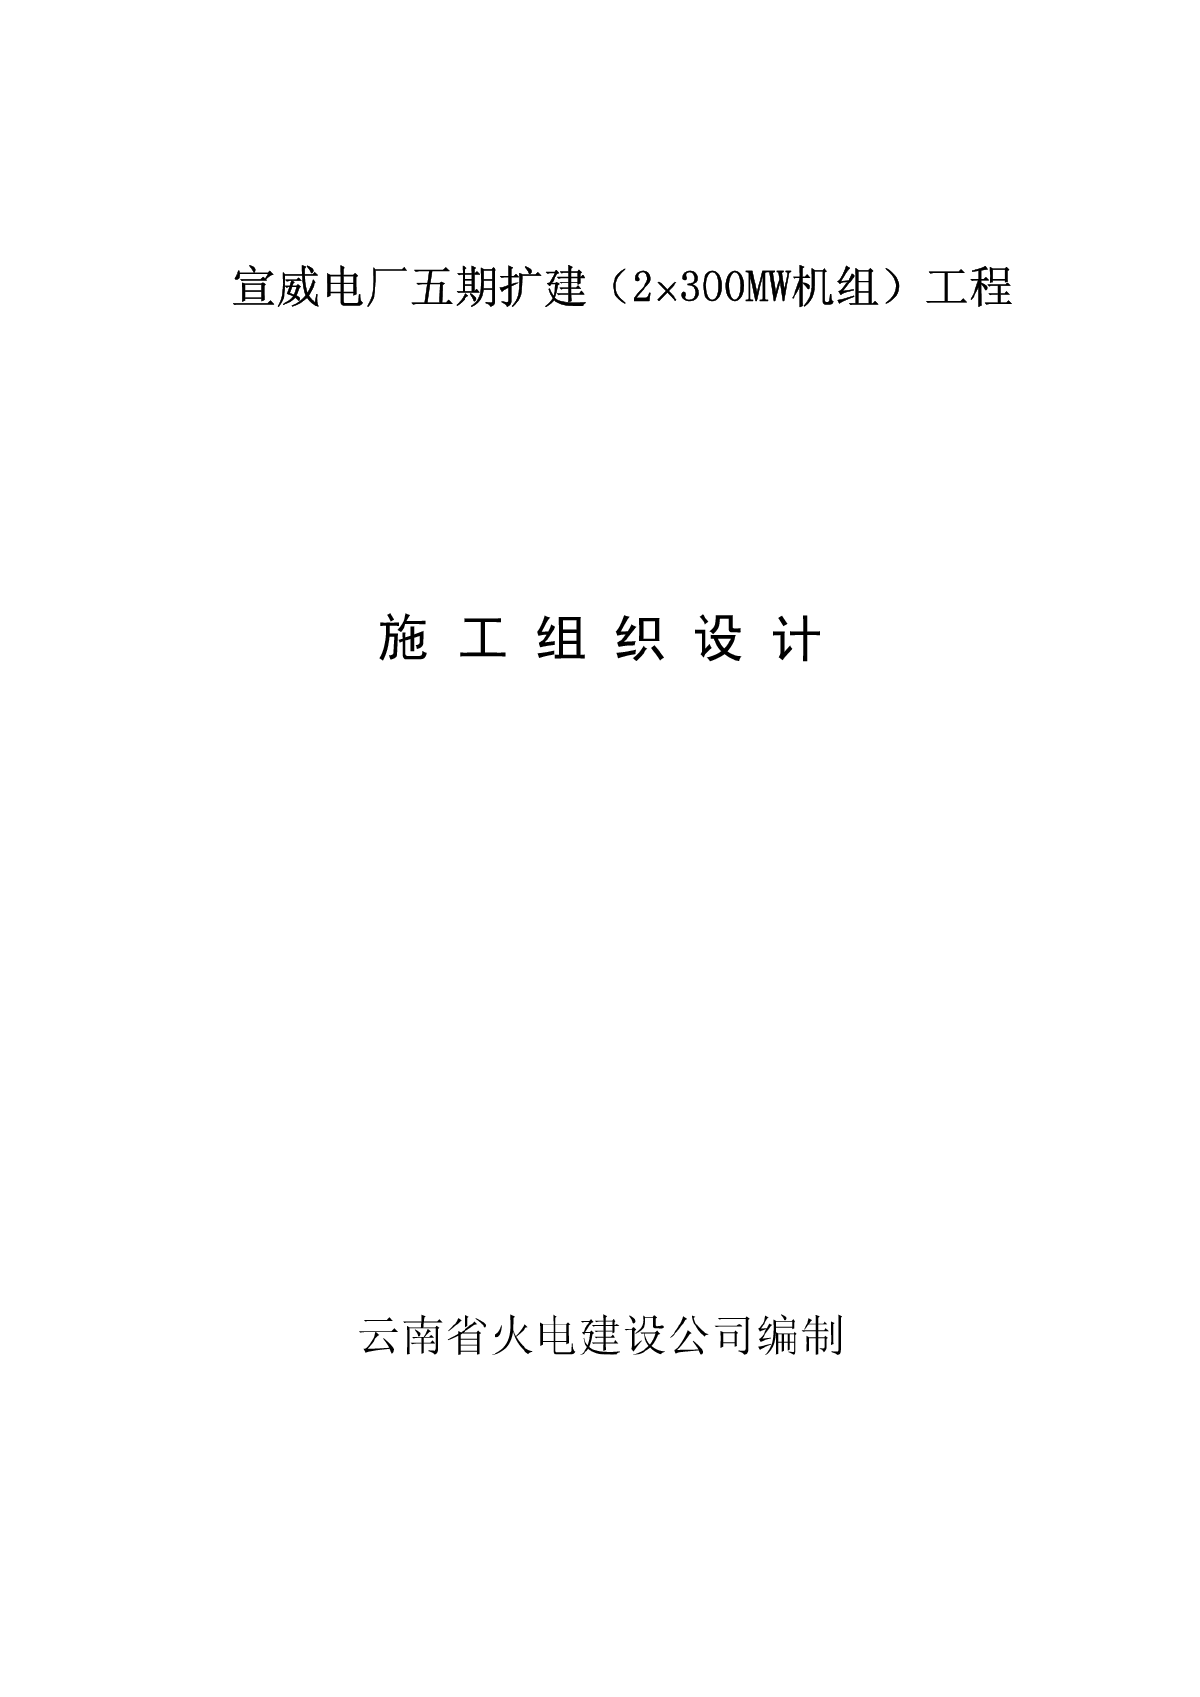 云南省火电公司电厂五期扩建工程-图一